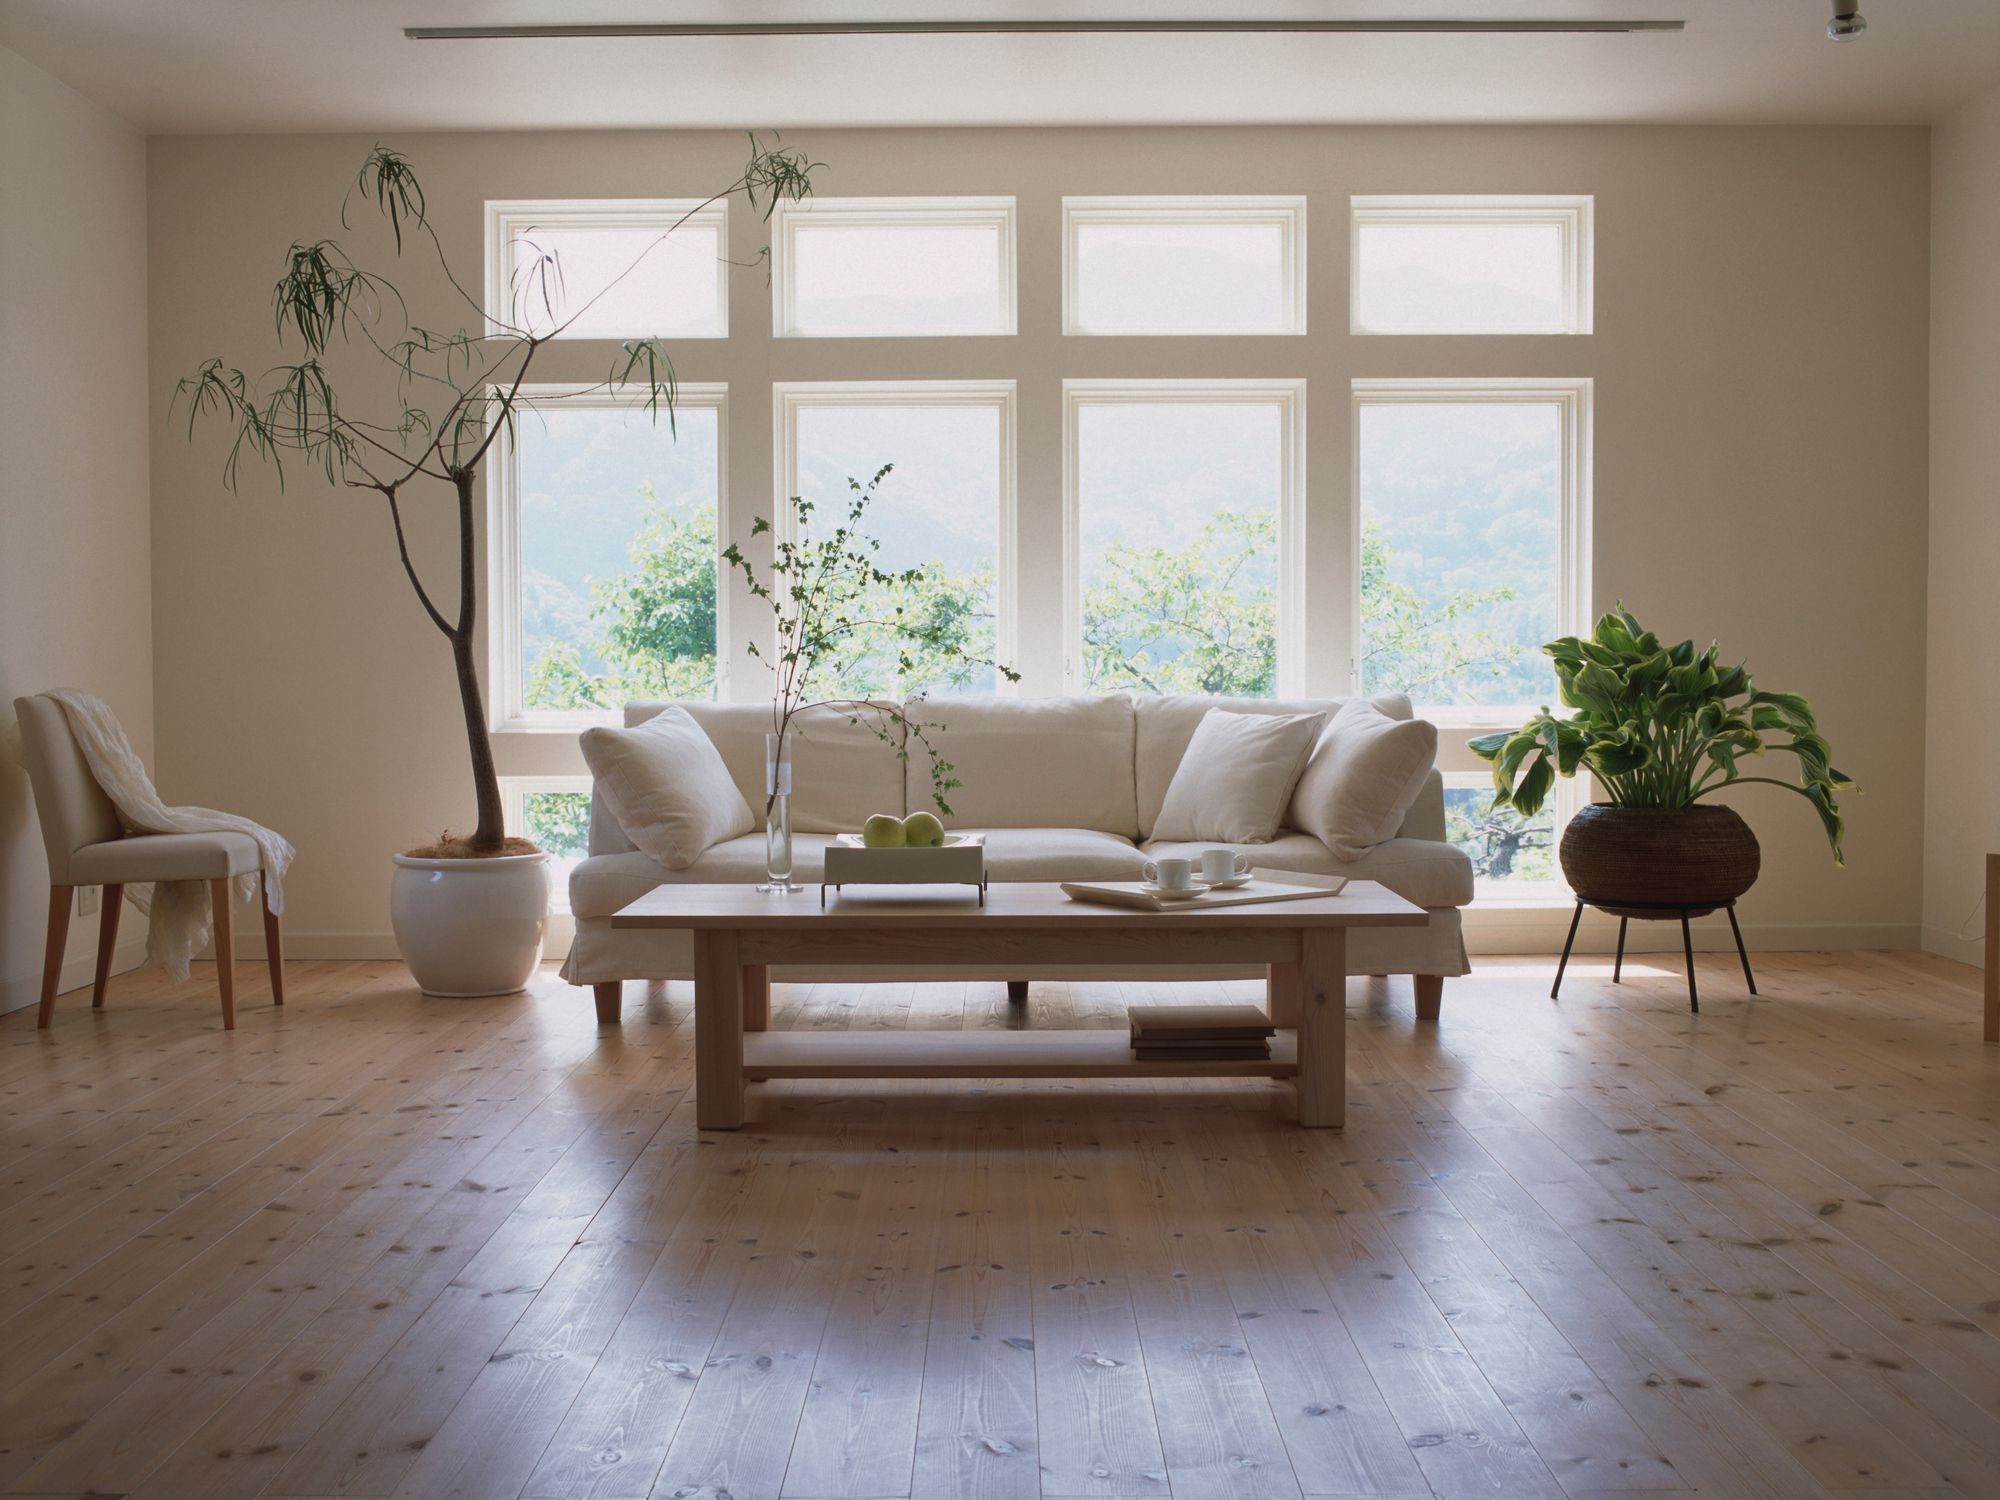 27 Best Best Hardwood Floor Mop 2016 2024 free download best hardwood floor mop 2016 of laminate flooring pros and cons within living room laminate floor gettyimages dexph070 001 58b5cc793df78cdcd8be2938